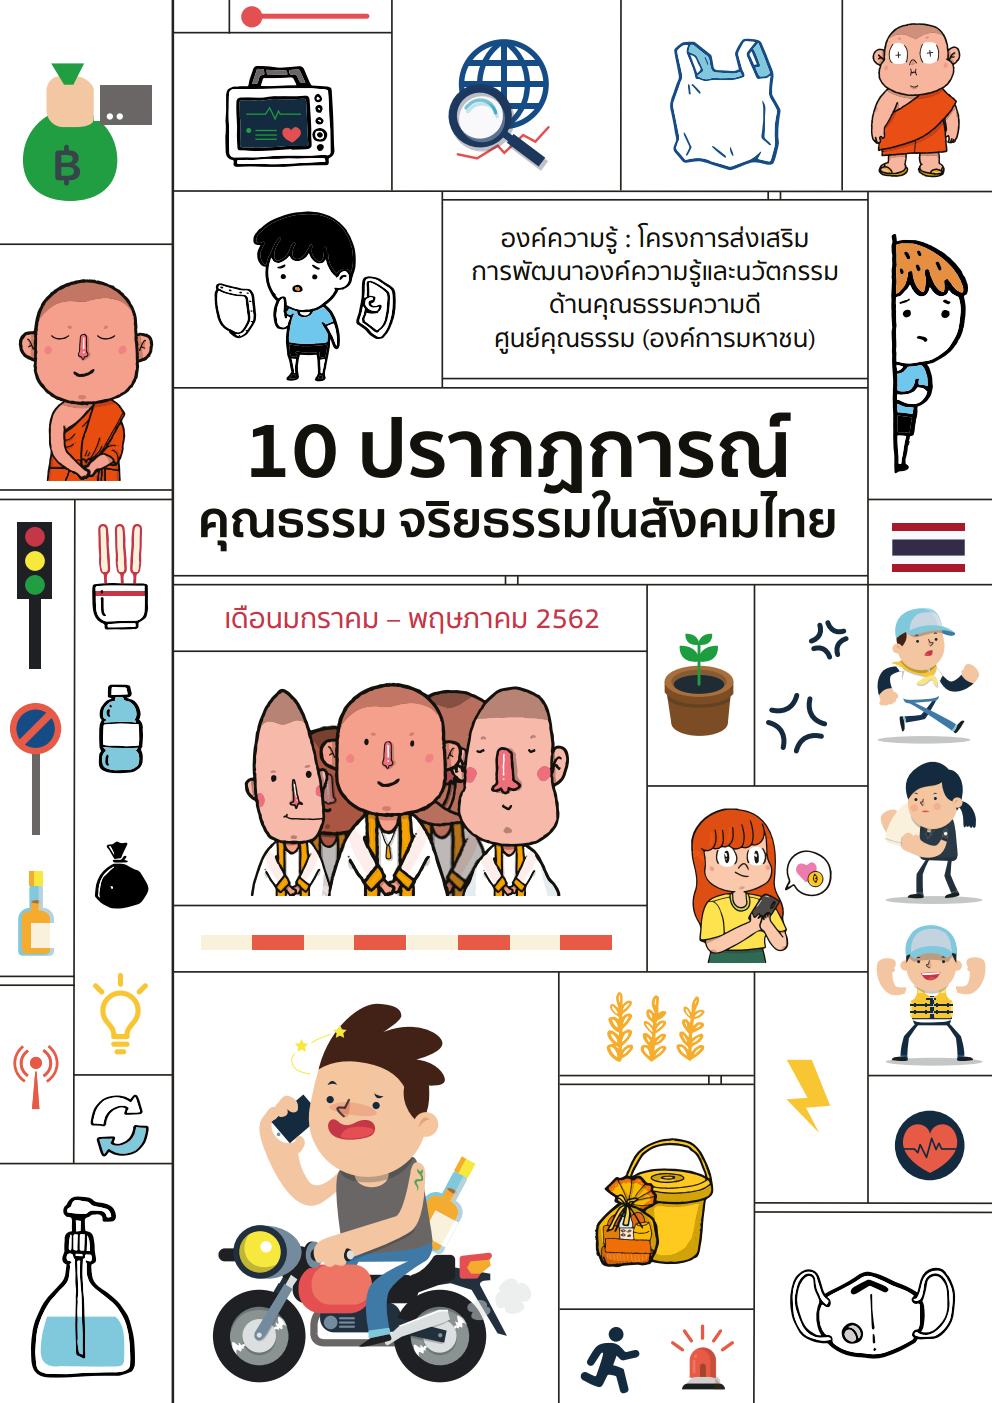 10 ปรากฎการณ์คุณธรรมจริยธรรมในสังคมไทย